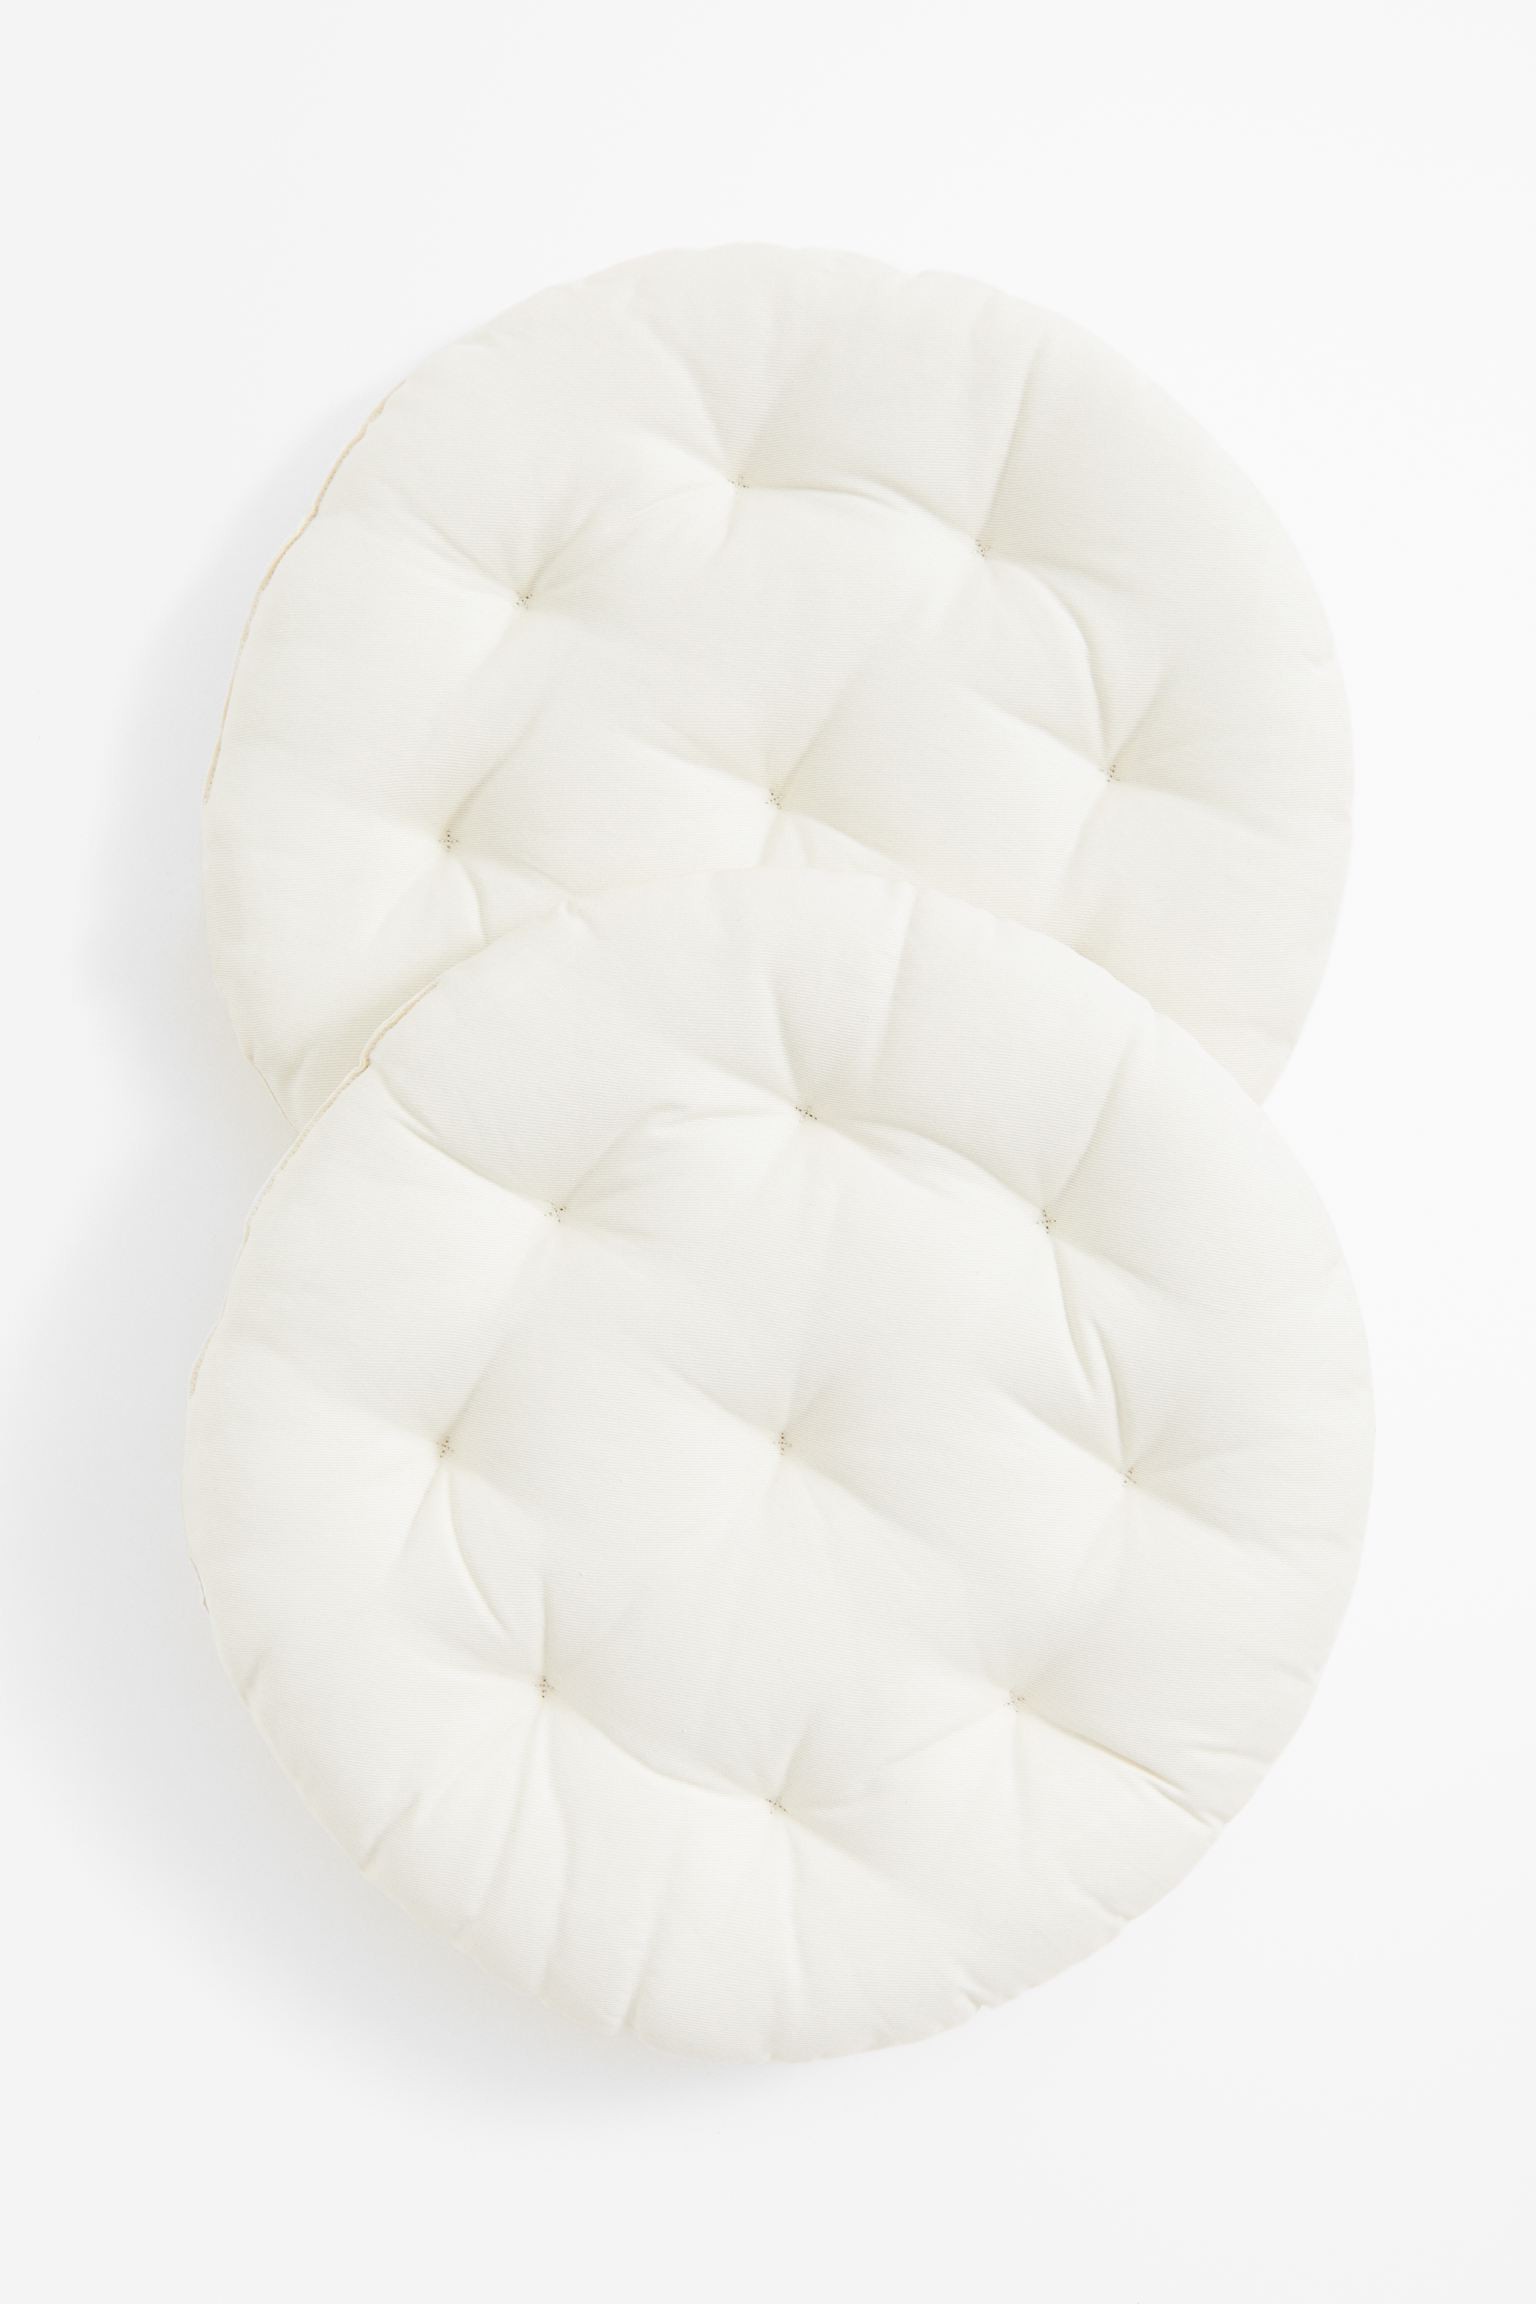 H&M Home Круглая подушка на стул, 2 шт., Натуральный белый, Разные размеры 1178517005 | 1178517005